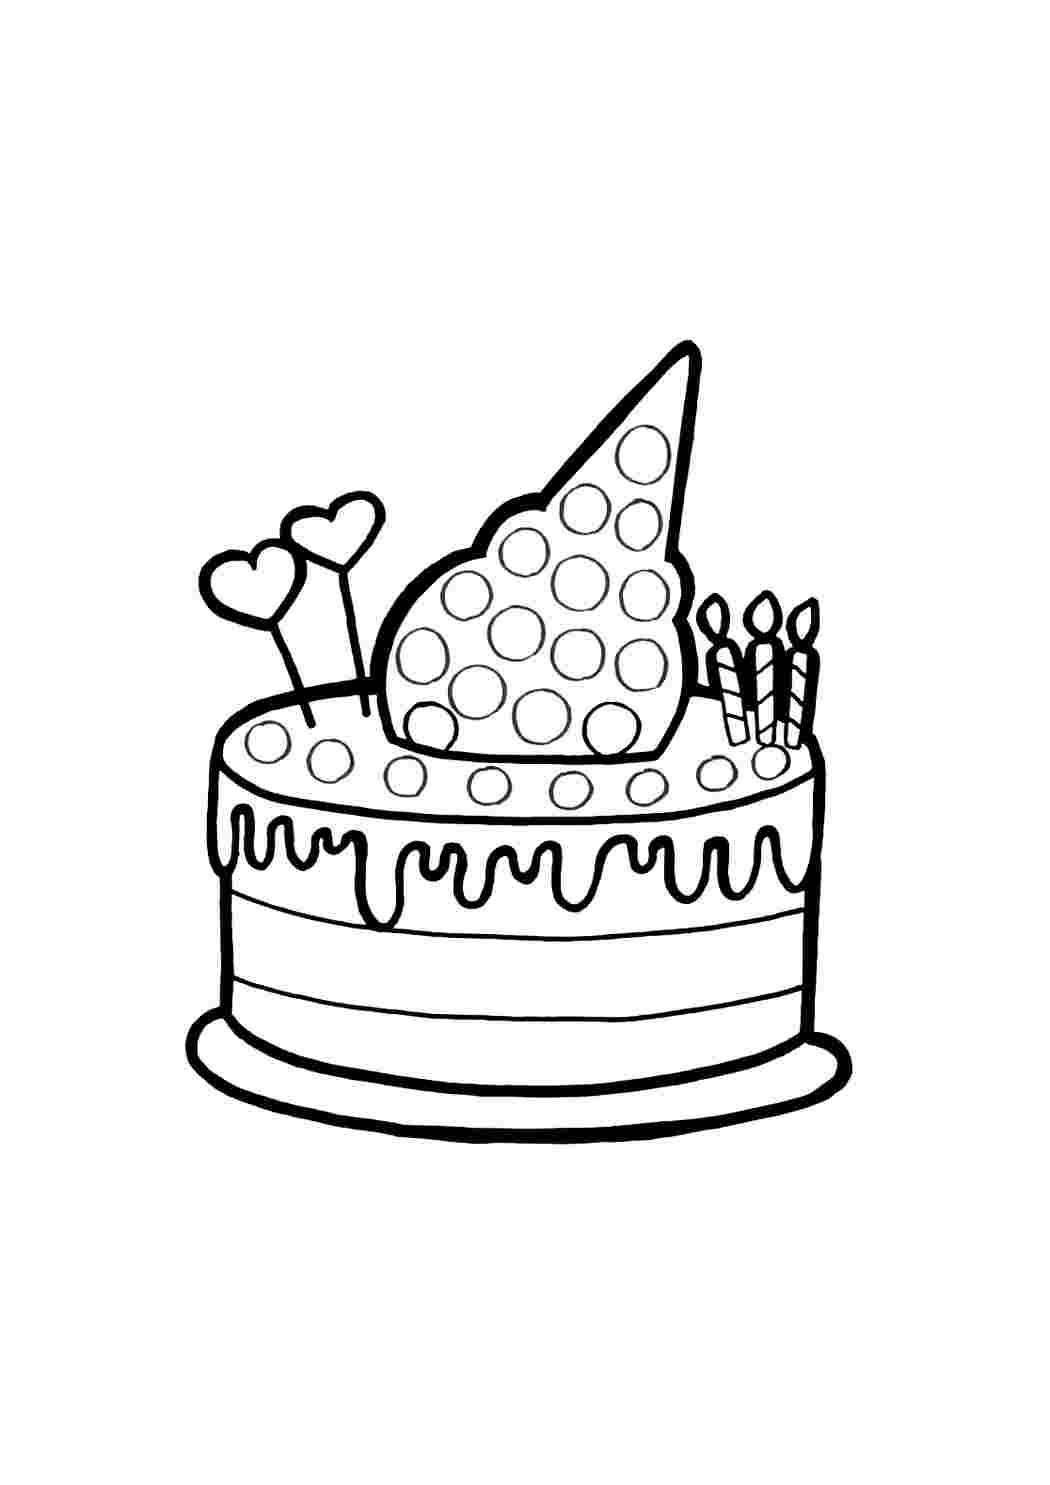 Торт распечатать а4. Раскраски для девочек тортики. Тортик раскраска для детей. Торт раскраска для детей. Раскраска торт на день рождения.